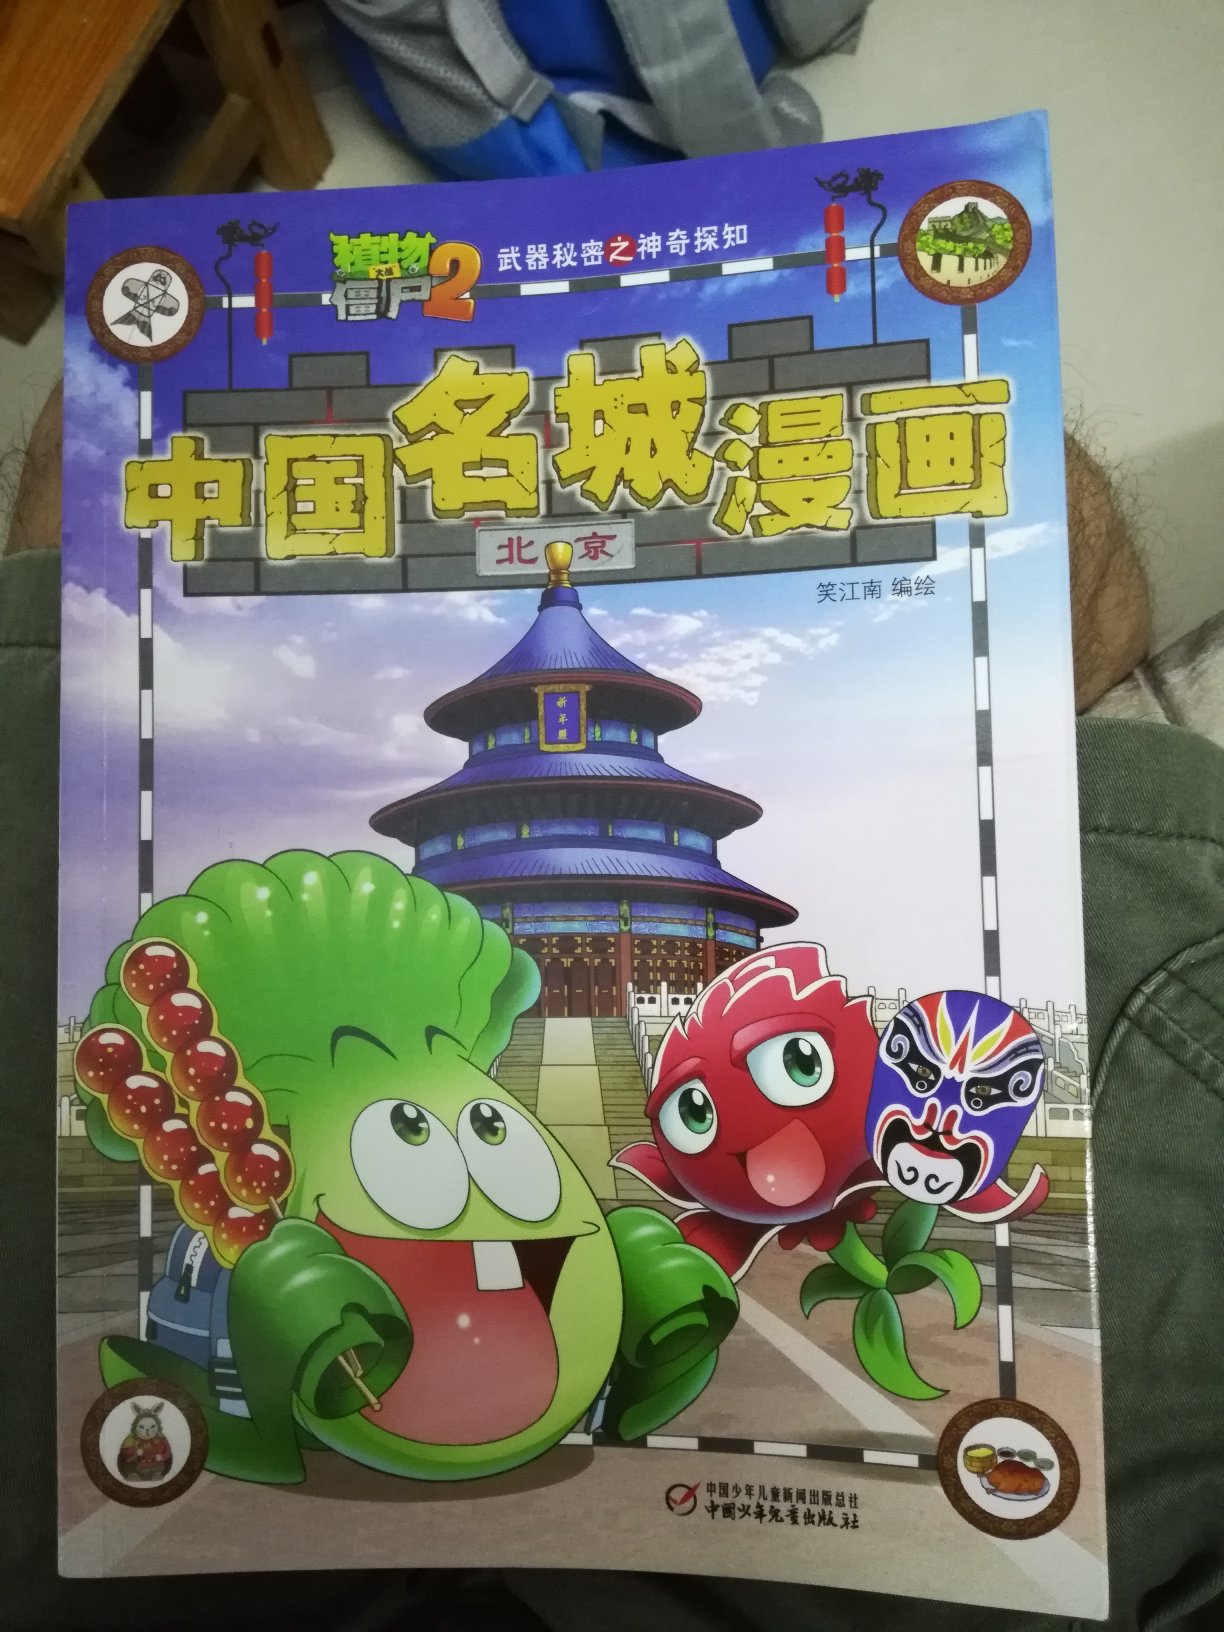 书后面的简介不是介绍有广州的么 怎么购买页面选择的却找不到广州的 所以只能买北京的 孩子一直说很想要广州的那本 但是孩子还是很喜欢